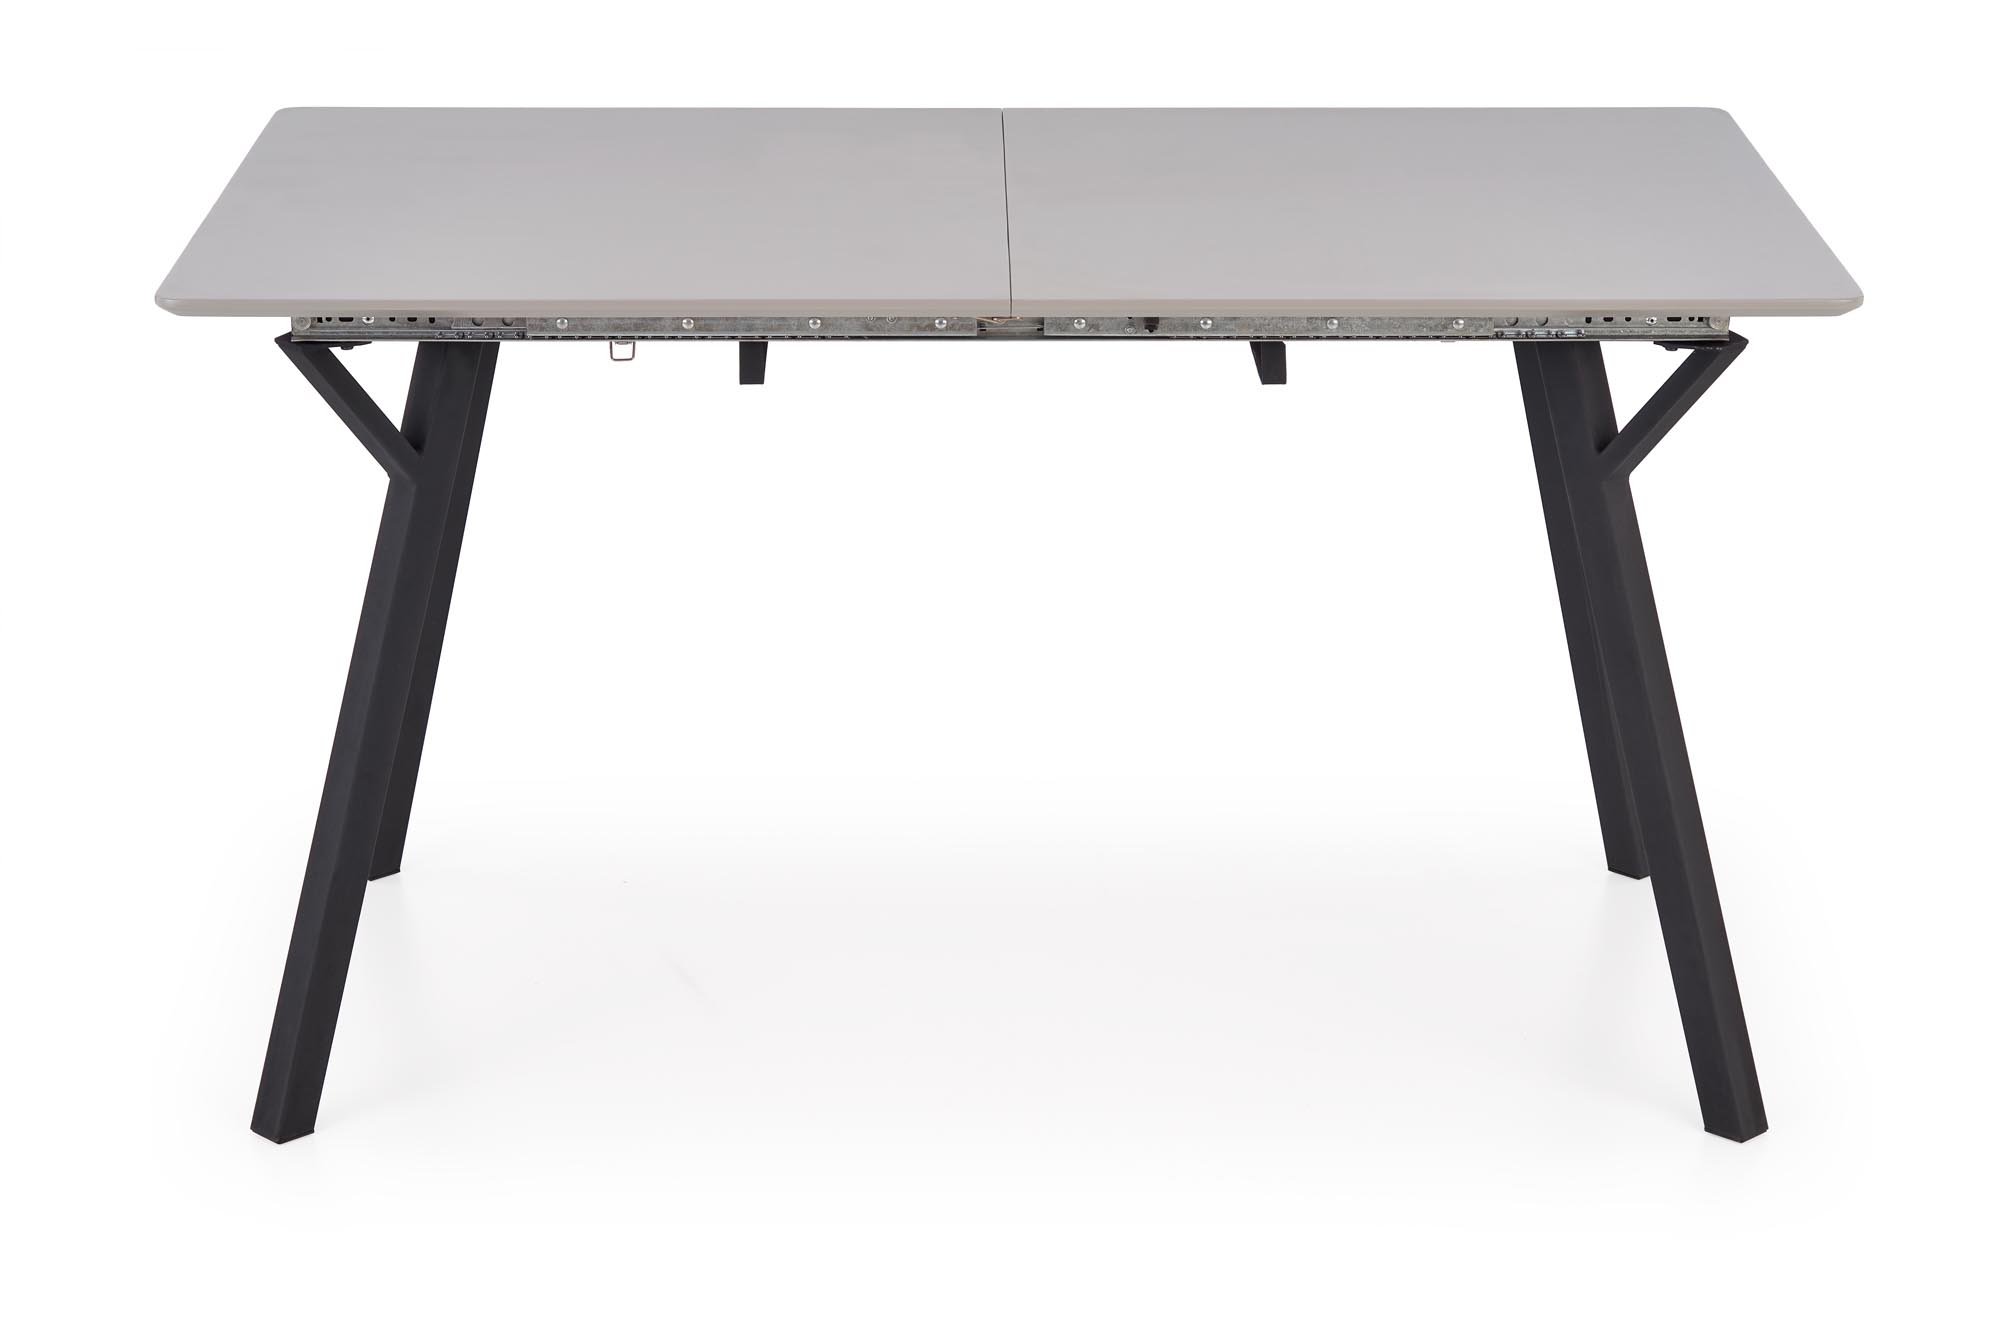 Stôl rozkladany Balrog 2 - svetlý popol / Čierny Stôl rozkladany balrog 2 - svetlý popol / Čierny